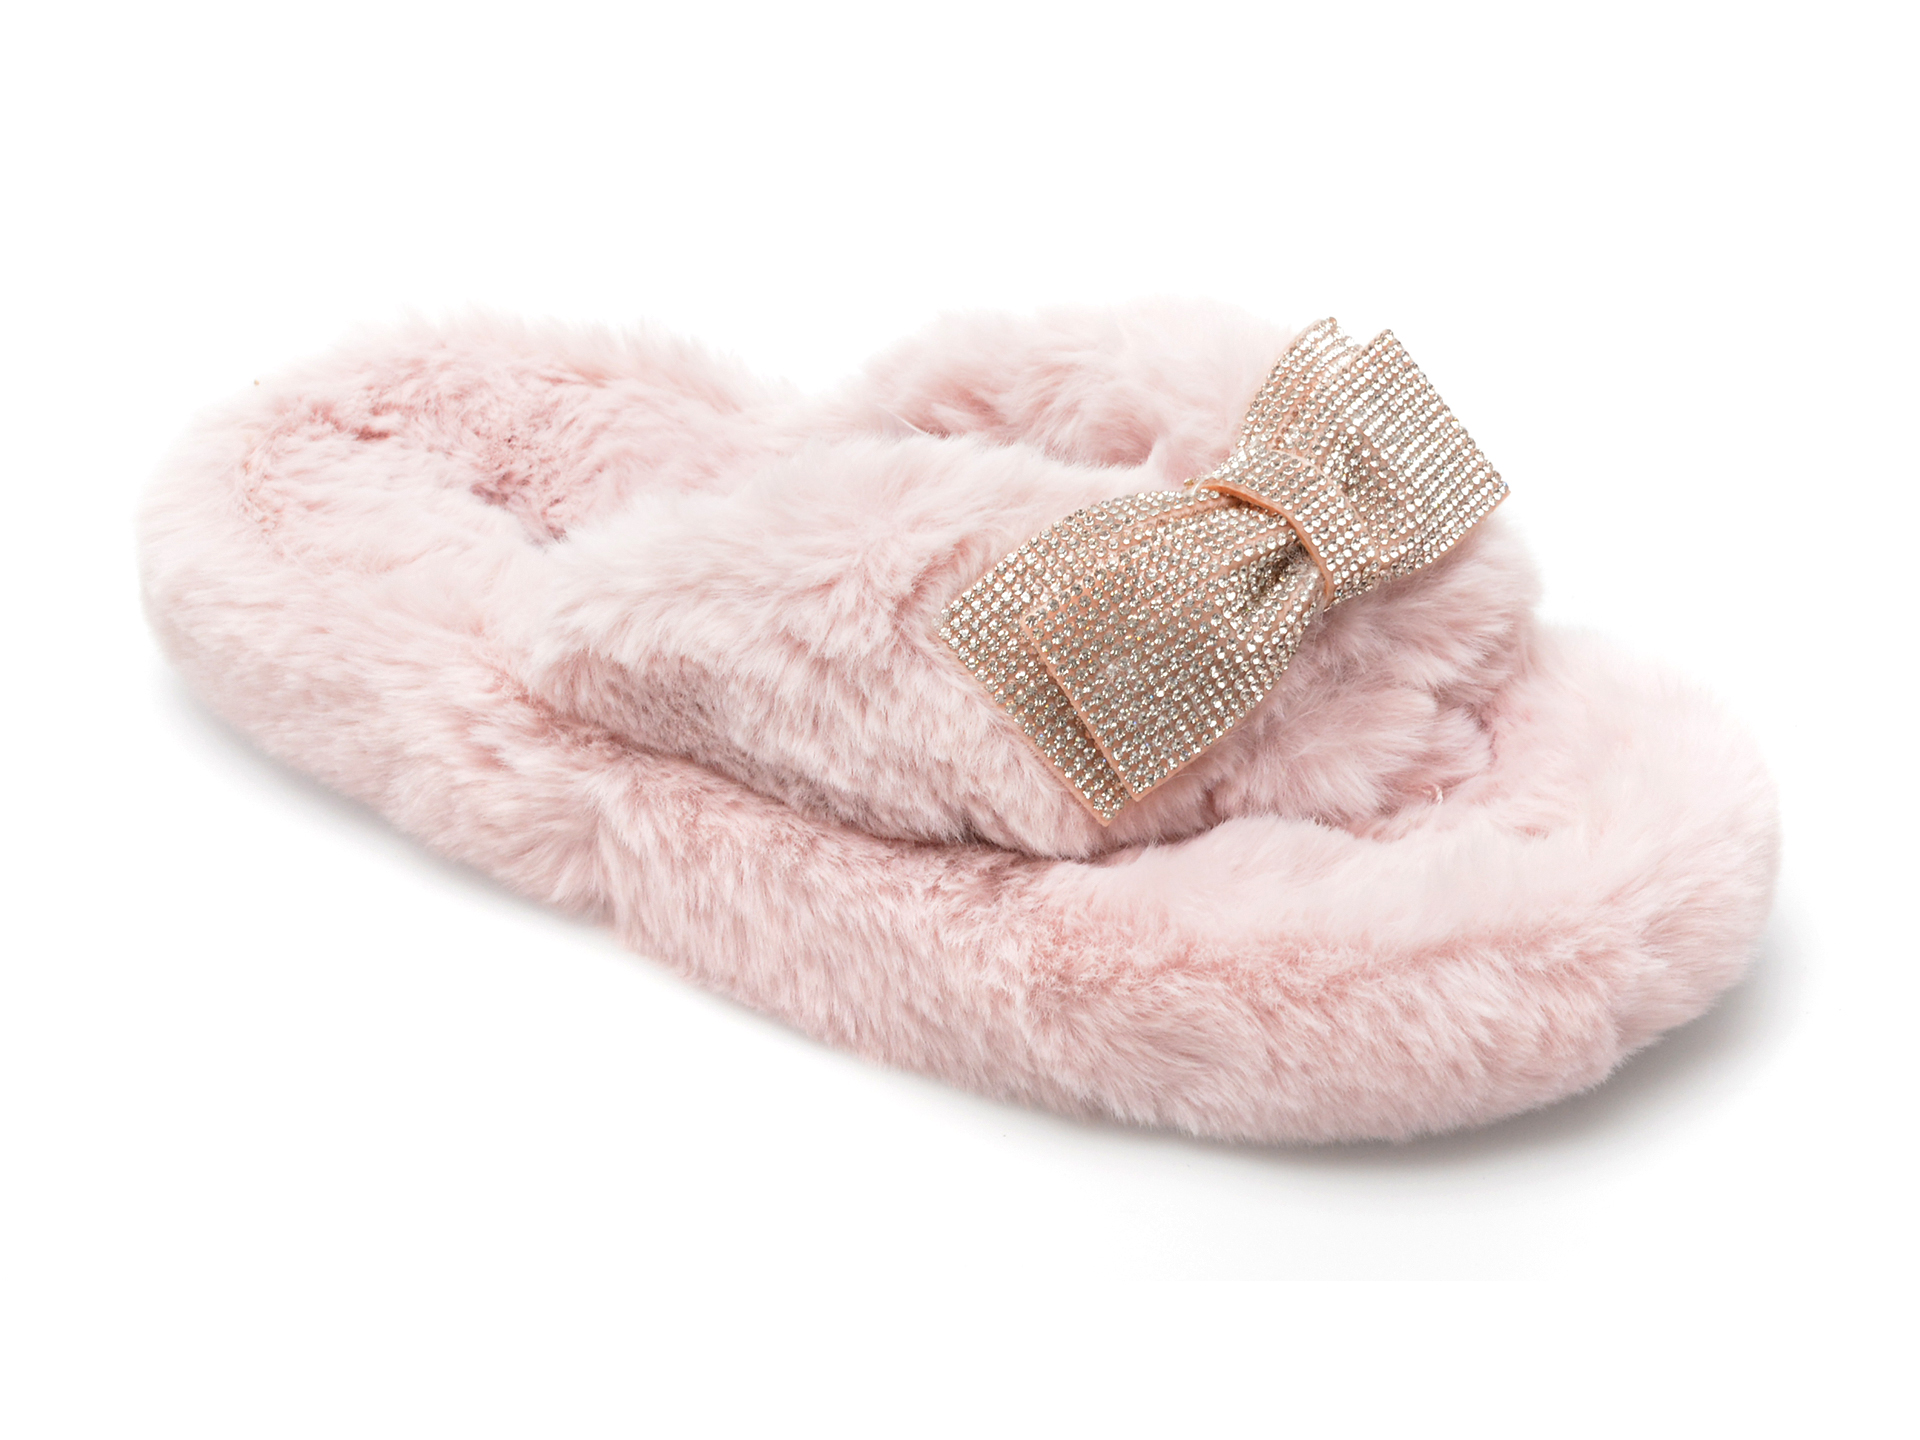 Papuci de casa ALDO roz, BOWPOUF680, din material textil